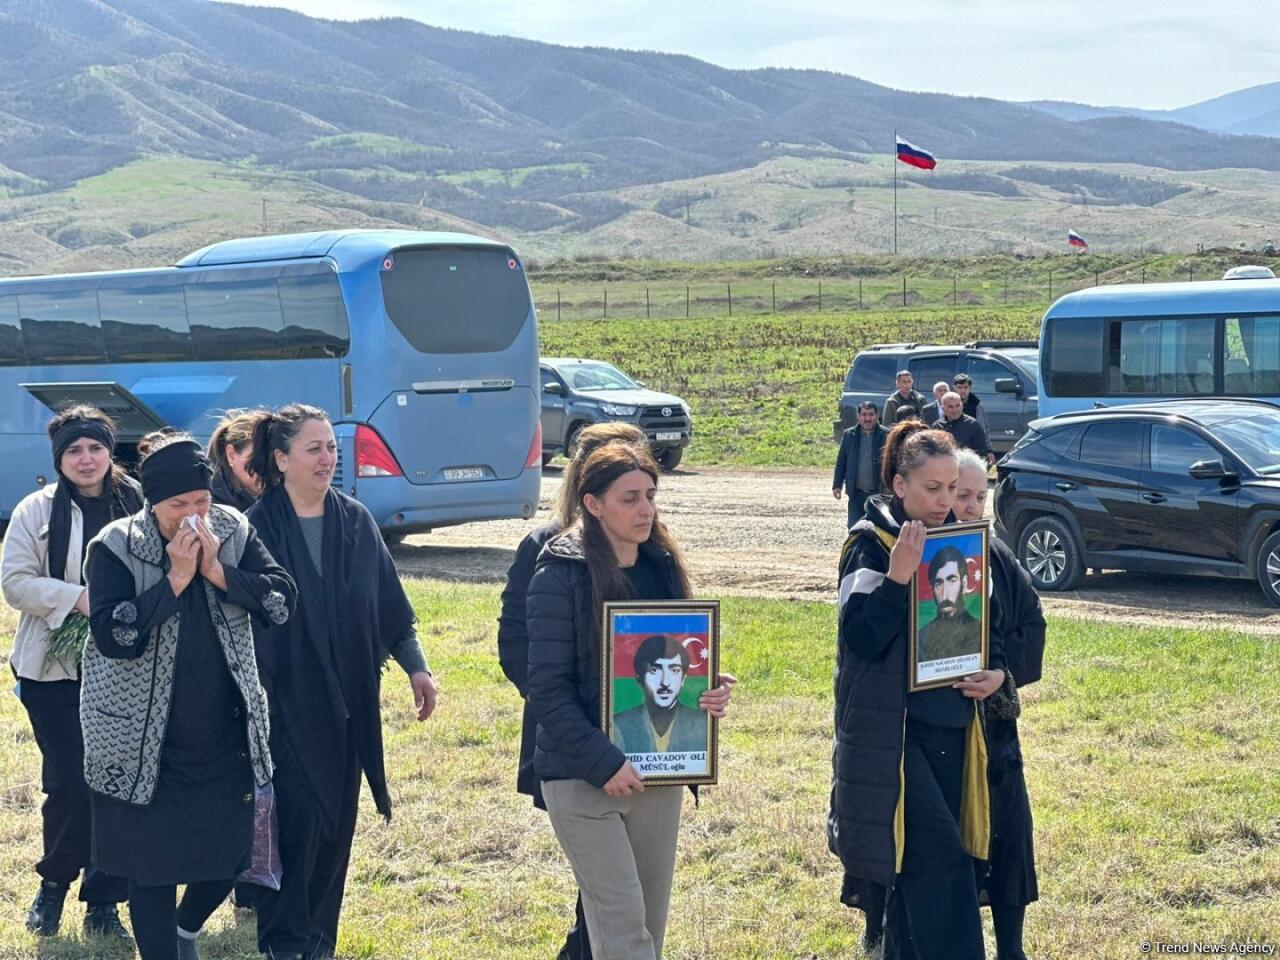 В Ходжалы захоронены останки жертв Ходжалинского геноцида